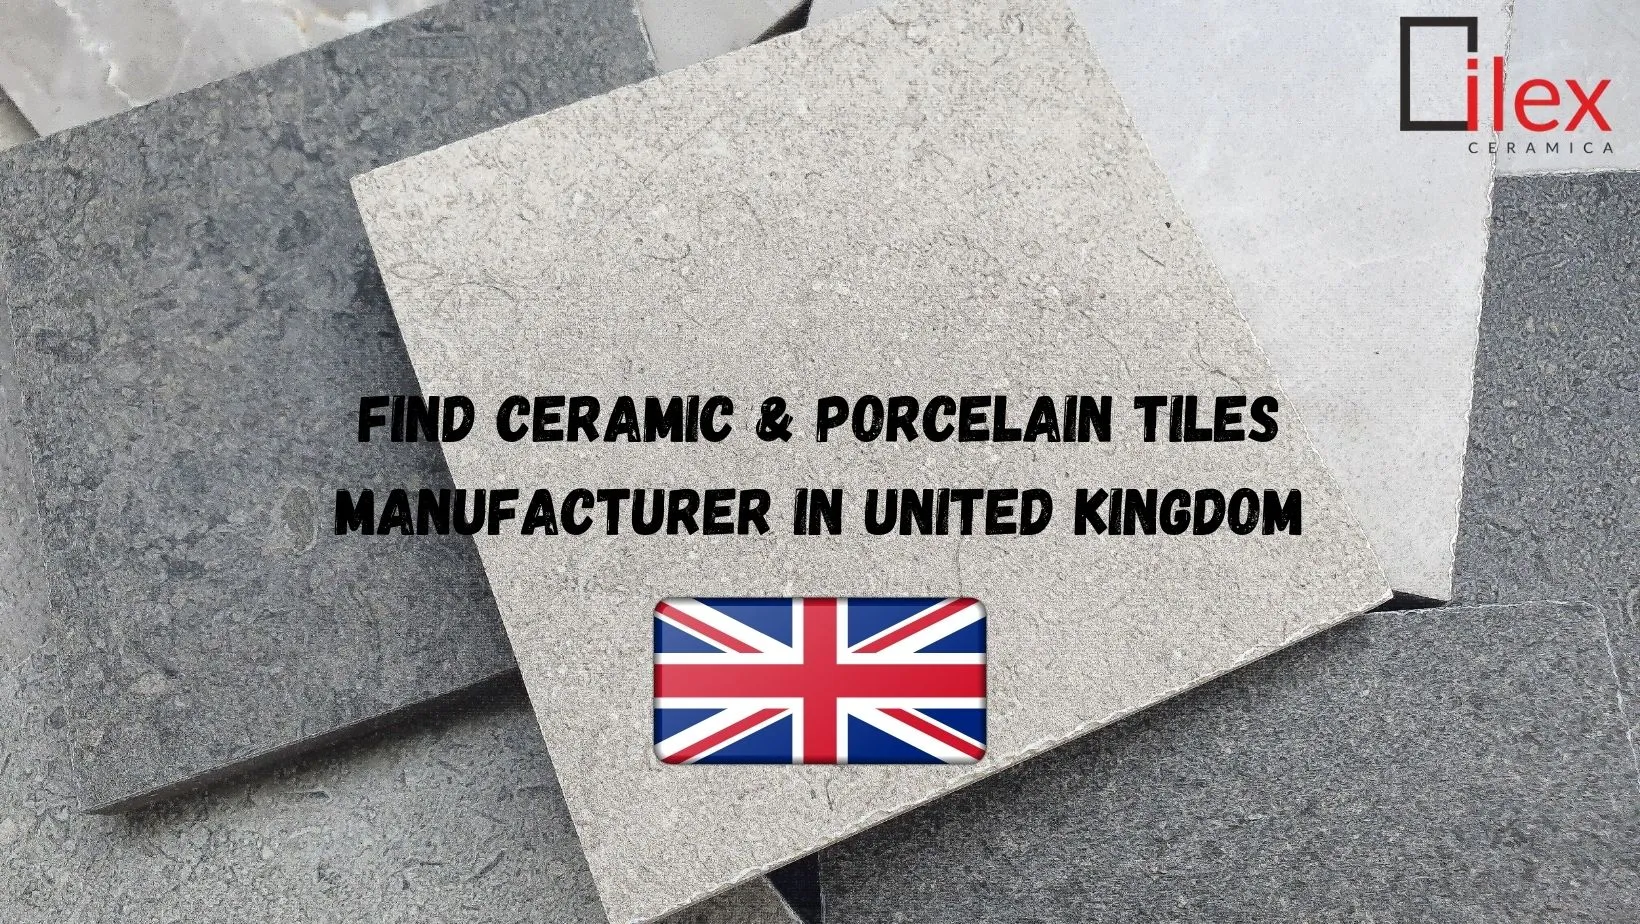 Find Ceramic & Porcelain Tiles Manufacturer in United Kingdom